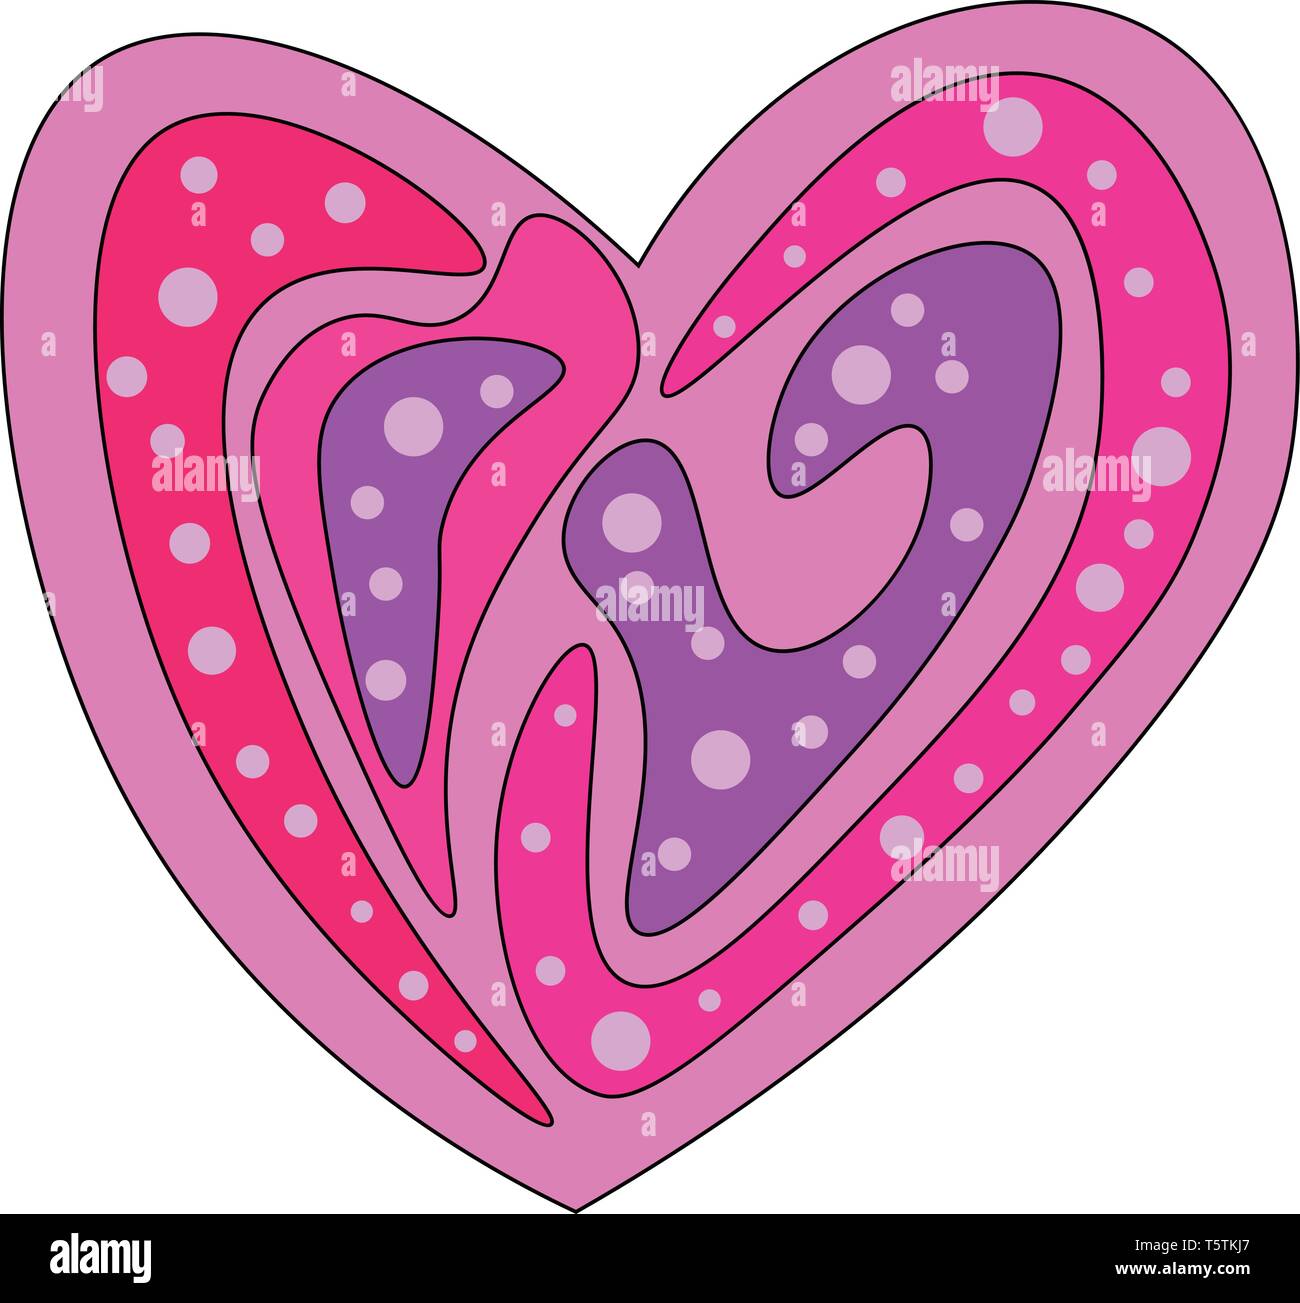 Un cuore multi-colorato con disegni regolari e disegni simboleggiano il vettore di amore il colore di disegno o illustrazione Illustrazione Vettoriale